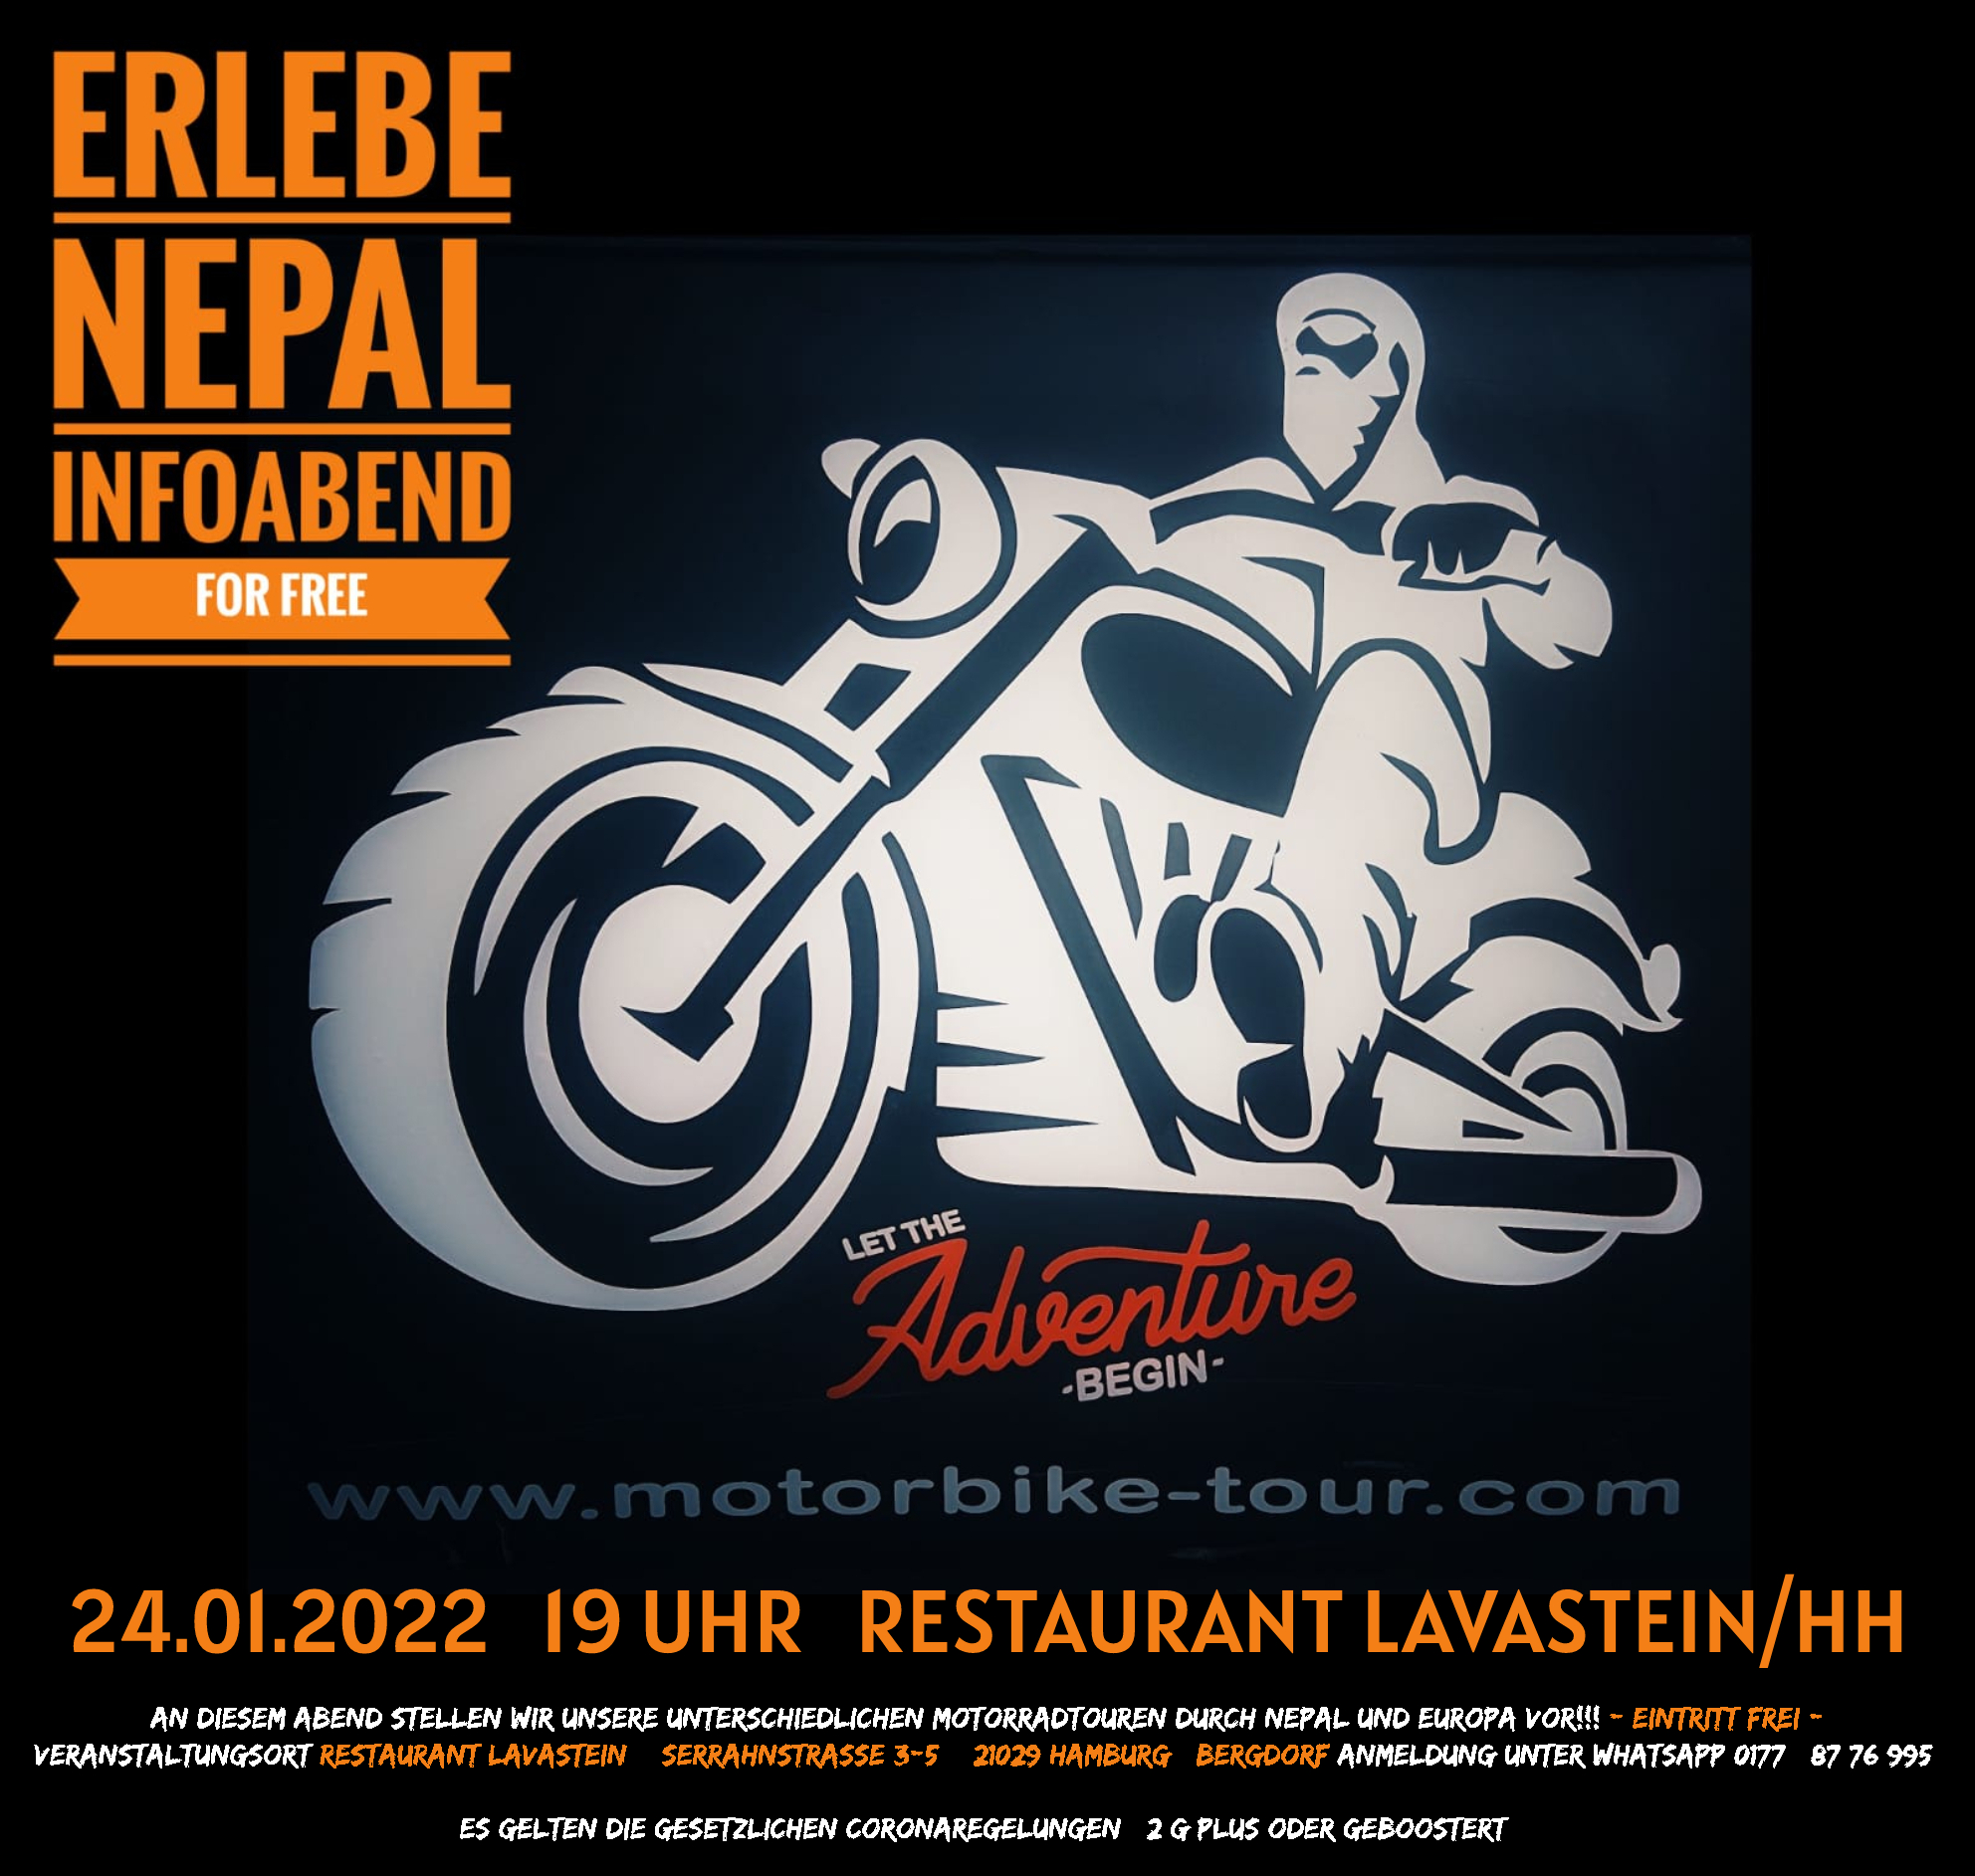 INFO ABENDE ÜBER UNSERE MOTOORADTOUREN DURCH NEPAL UND EUROPA by www.motorbike-tour.com